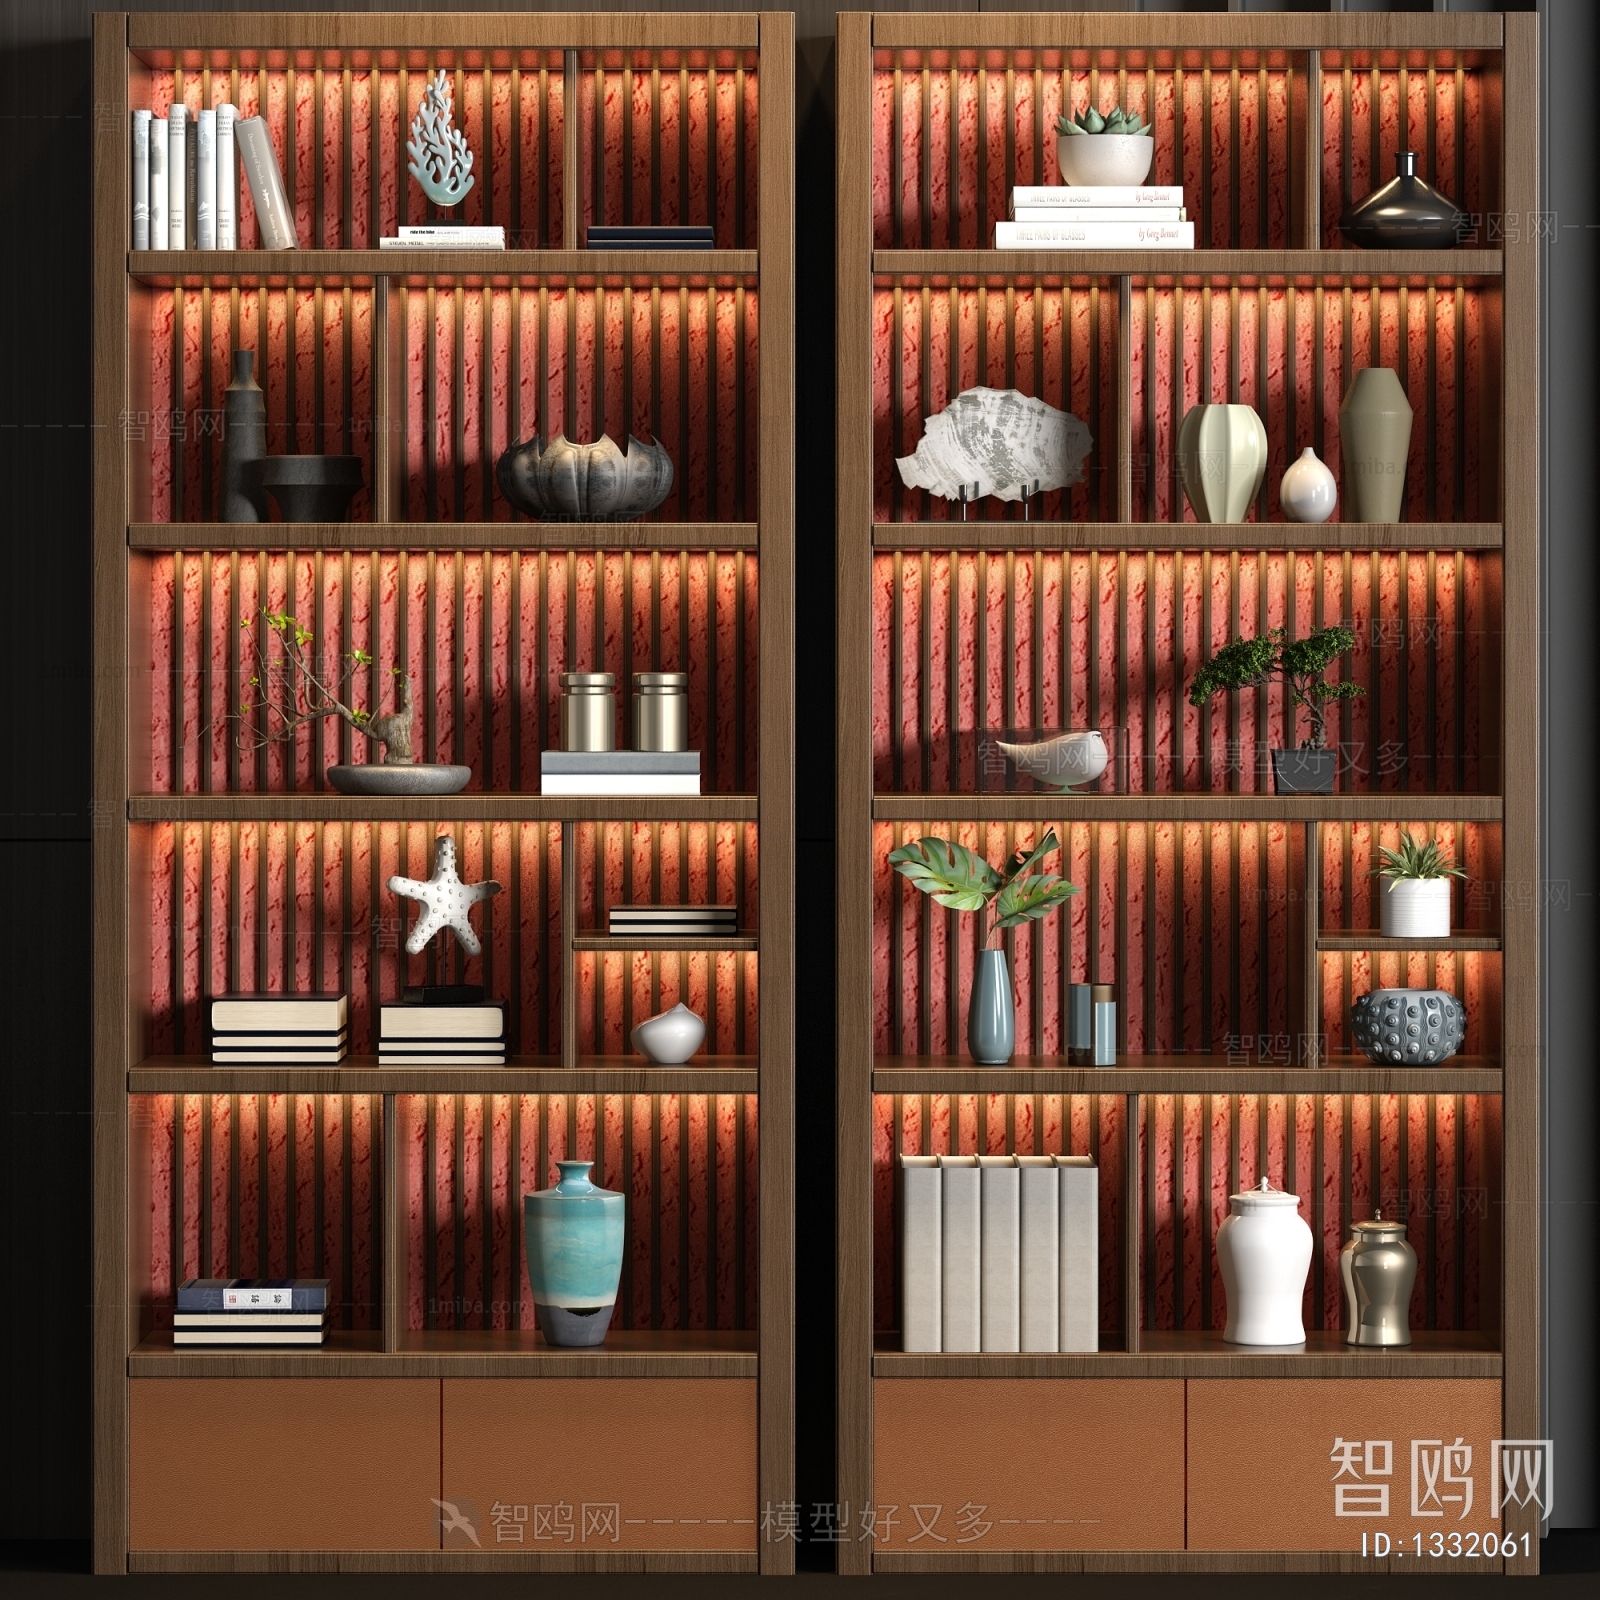 新中式实木装饰柜饰品书籍组合